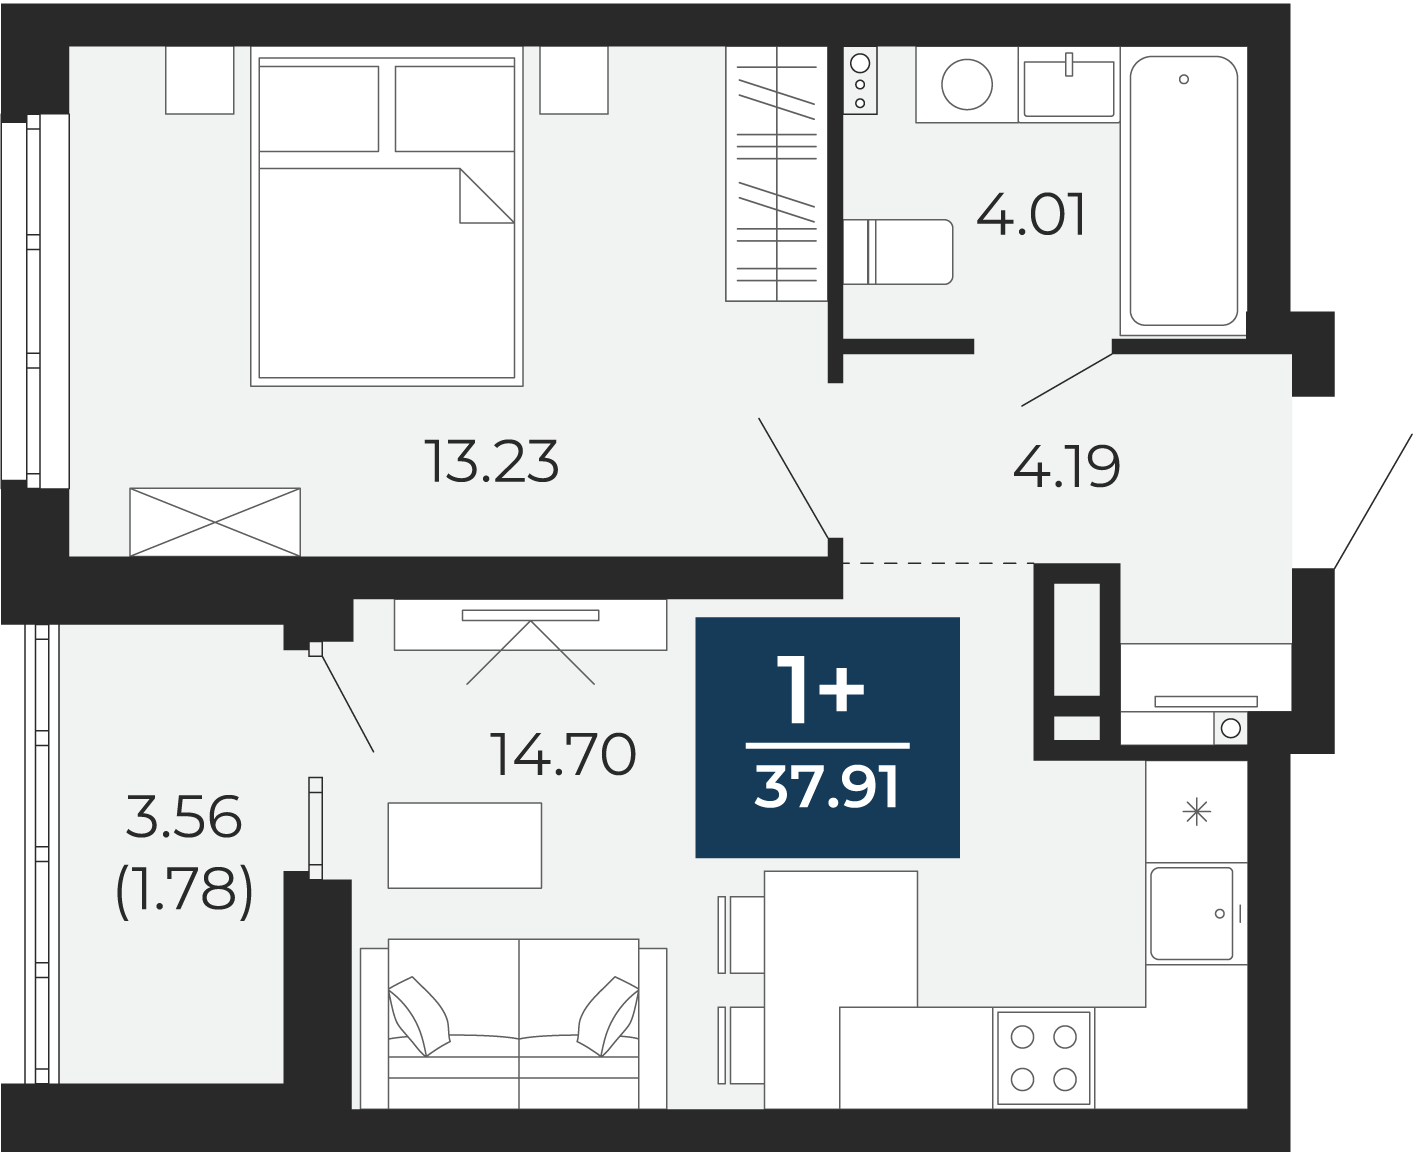 Квартира № 144, 1-комнатная, 37.91 кв. м, 15 этаж